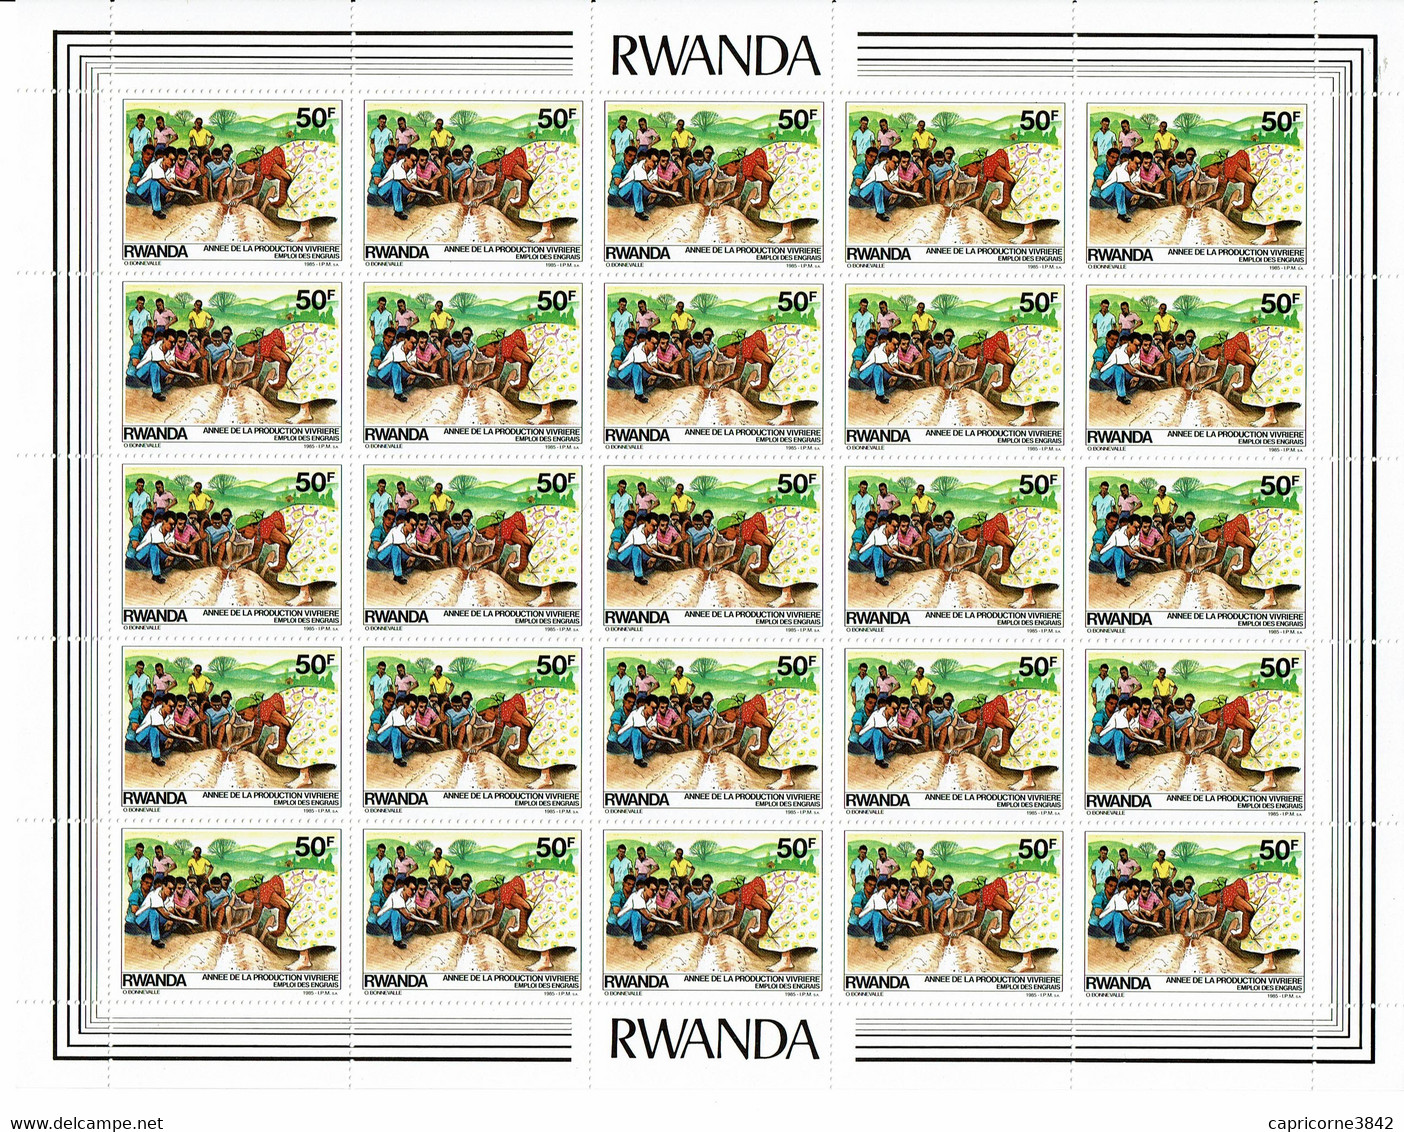 1985 - Rwanda - ANNEE DE LA PRODUCTION VIVRIERE - EMPLOI DES ENGRAIS - Feuille Entière De 25 Tp N° 1170 - Nuevos